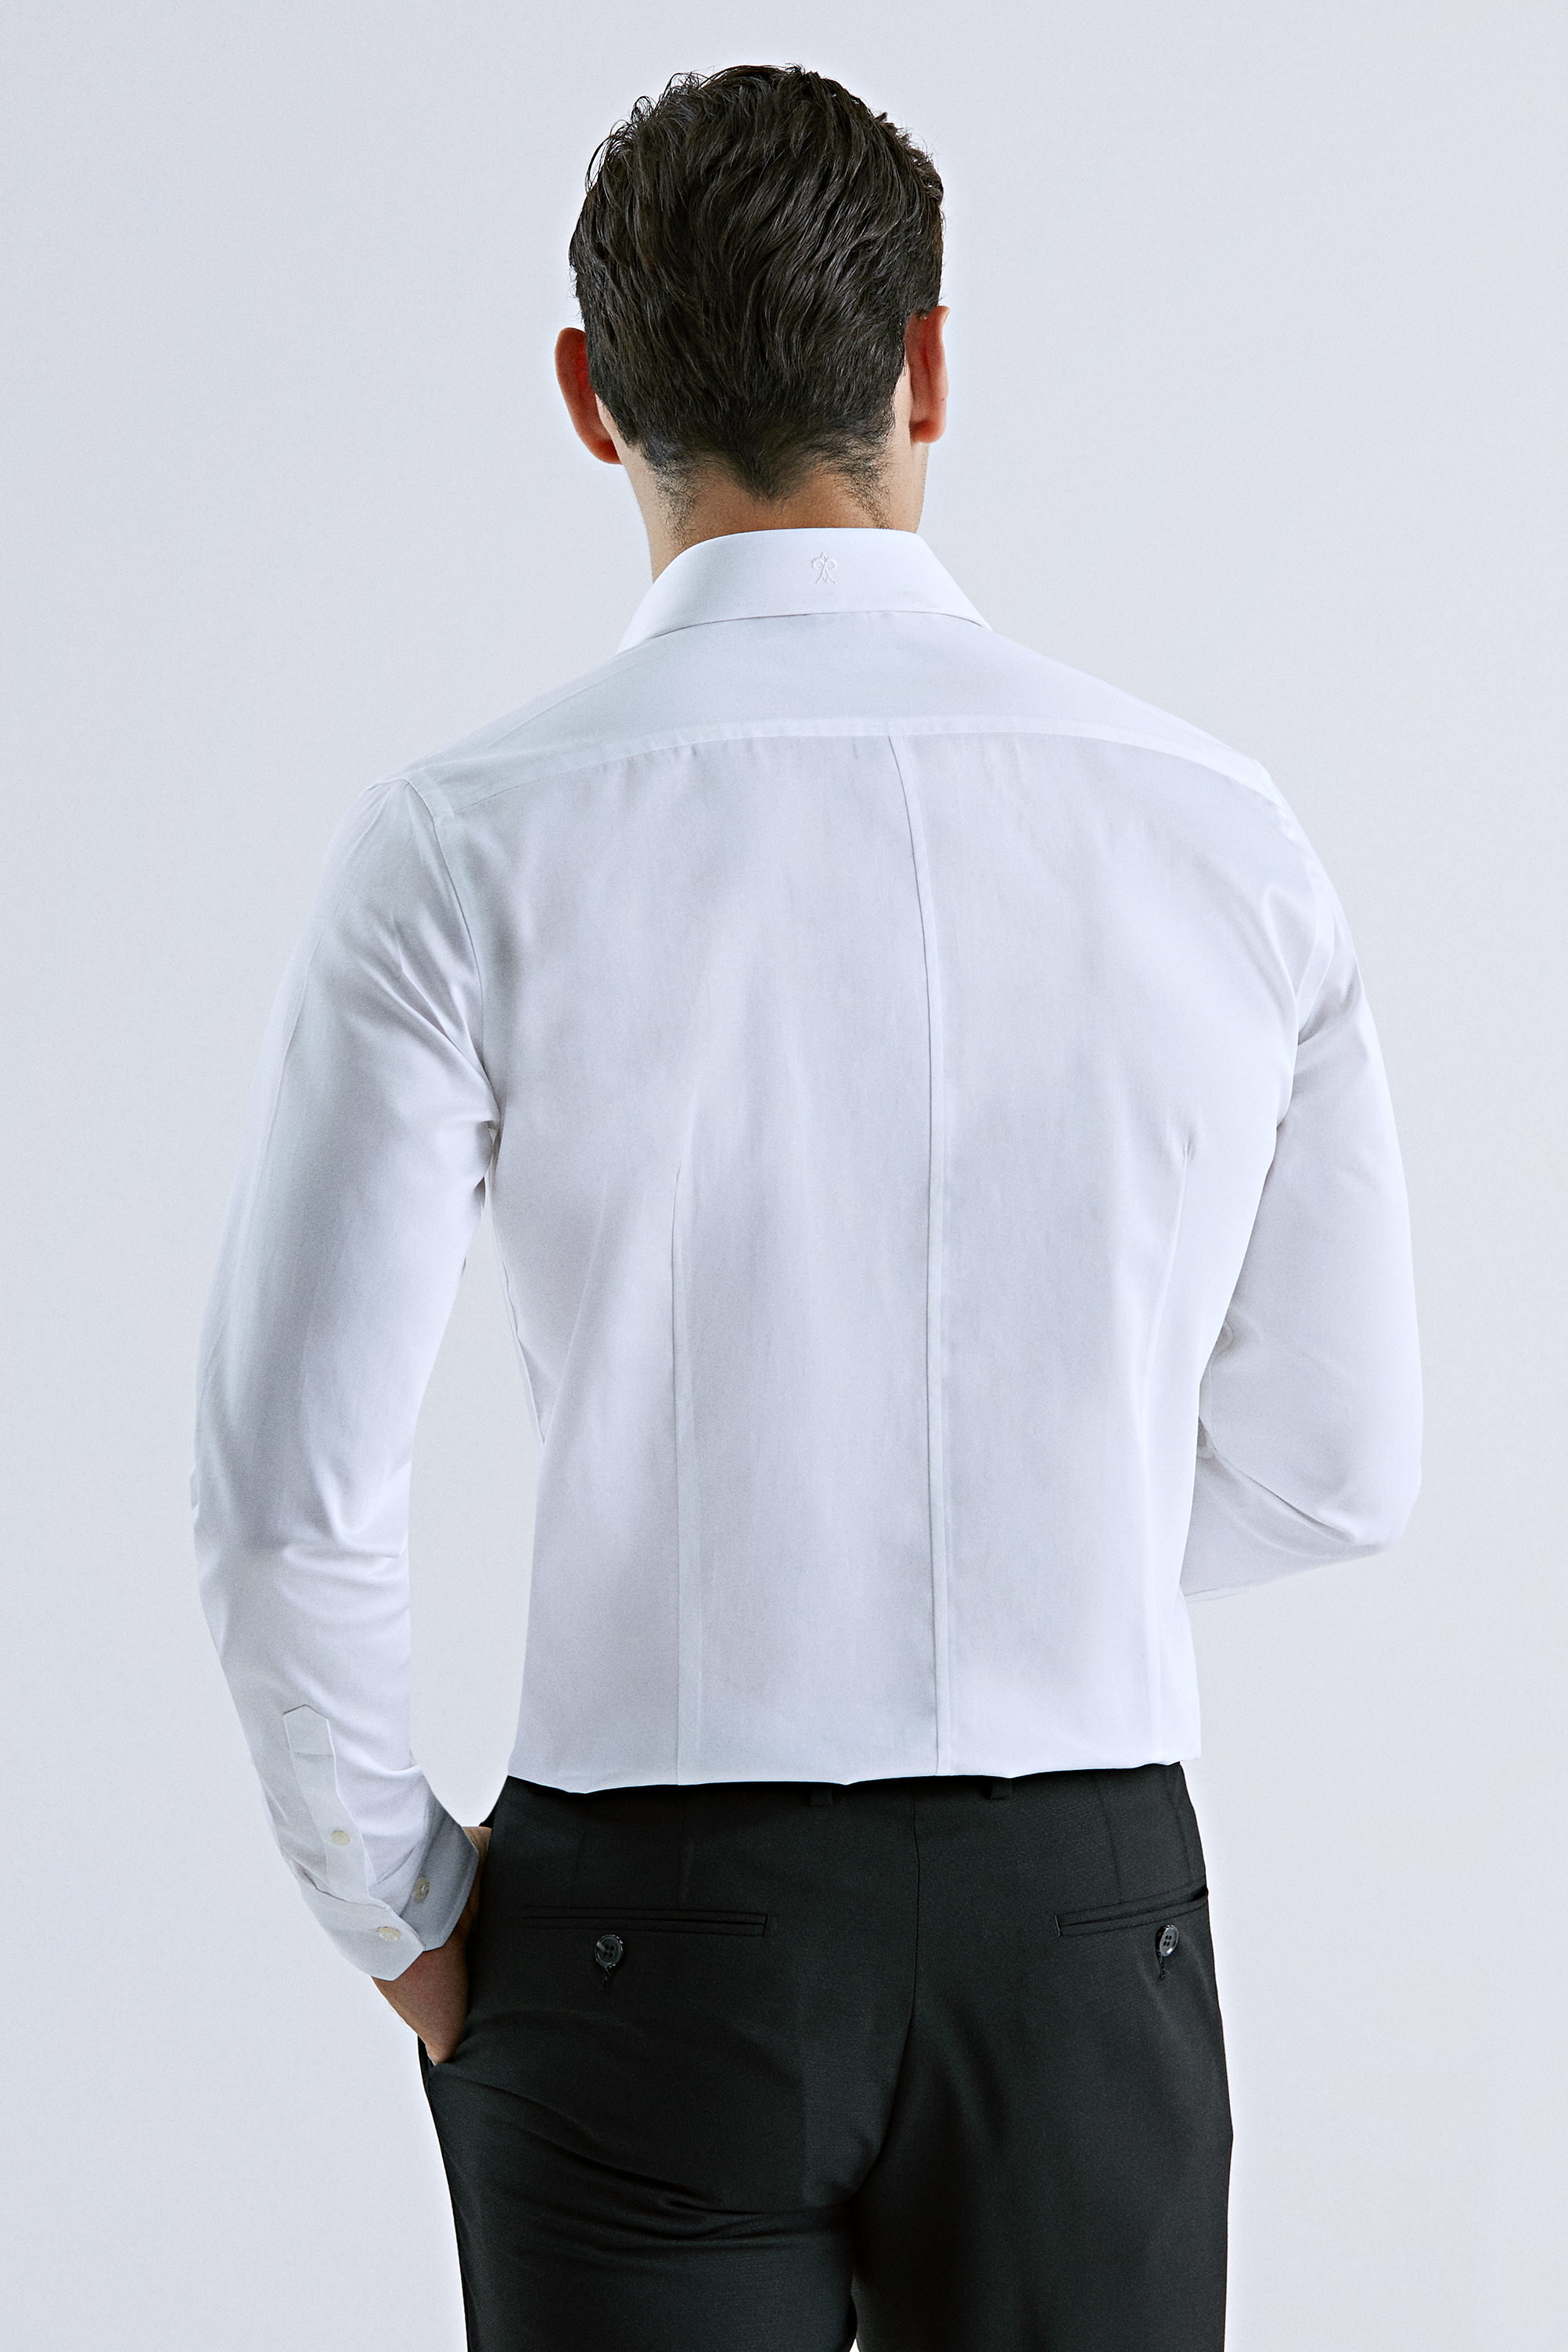 Damat Tween Damat Slim Fit Beyaz Düz Nano Care Gömlek. 4